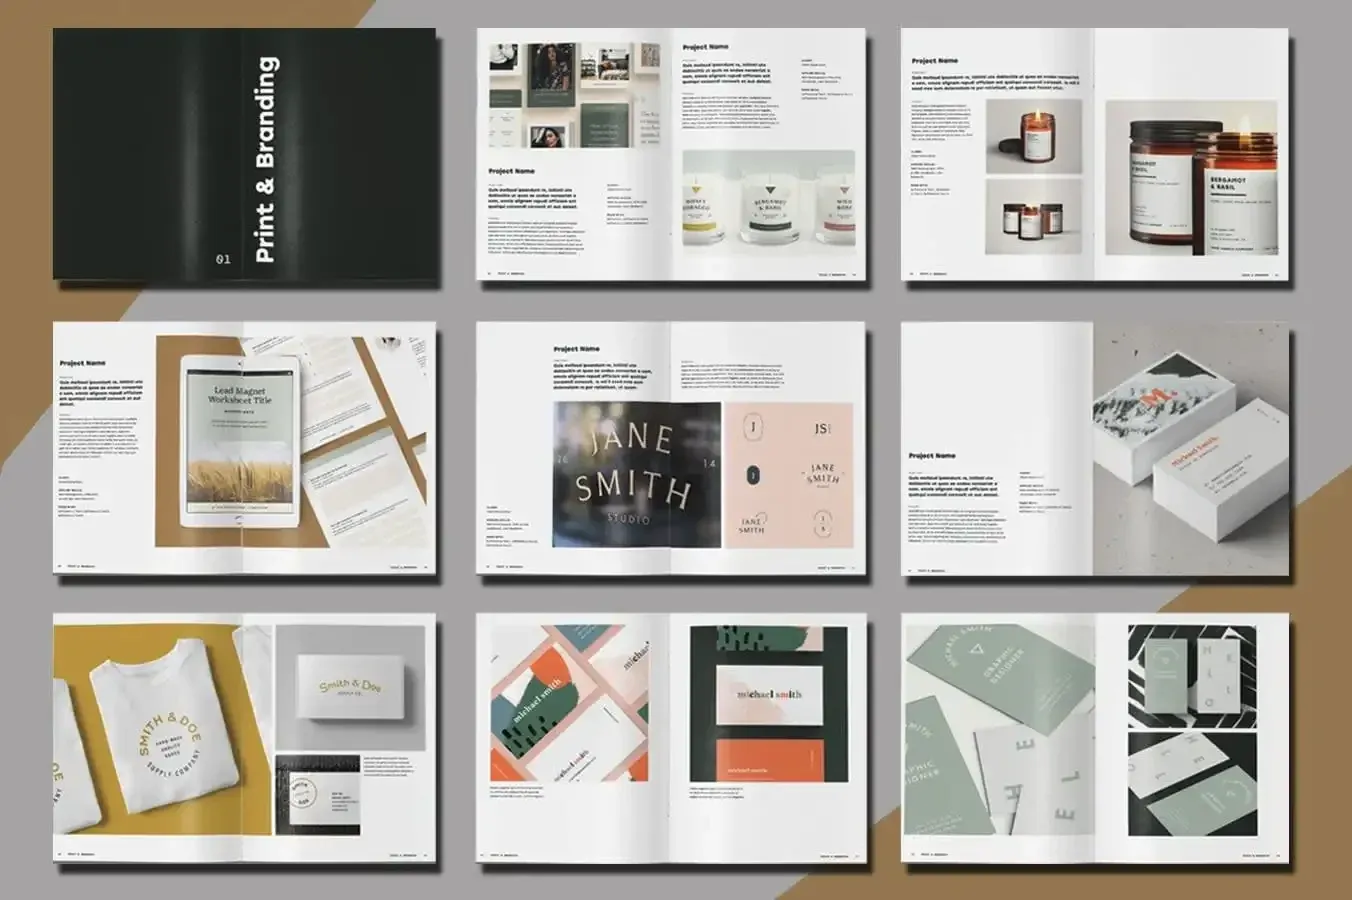 Seiten eines "Print & Branding"-Magazins auf grauem und braunem Hintergrund.